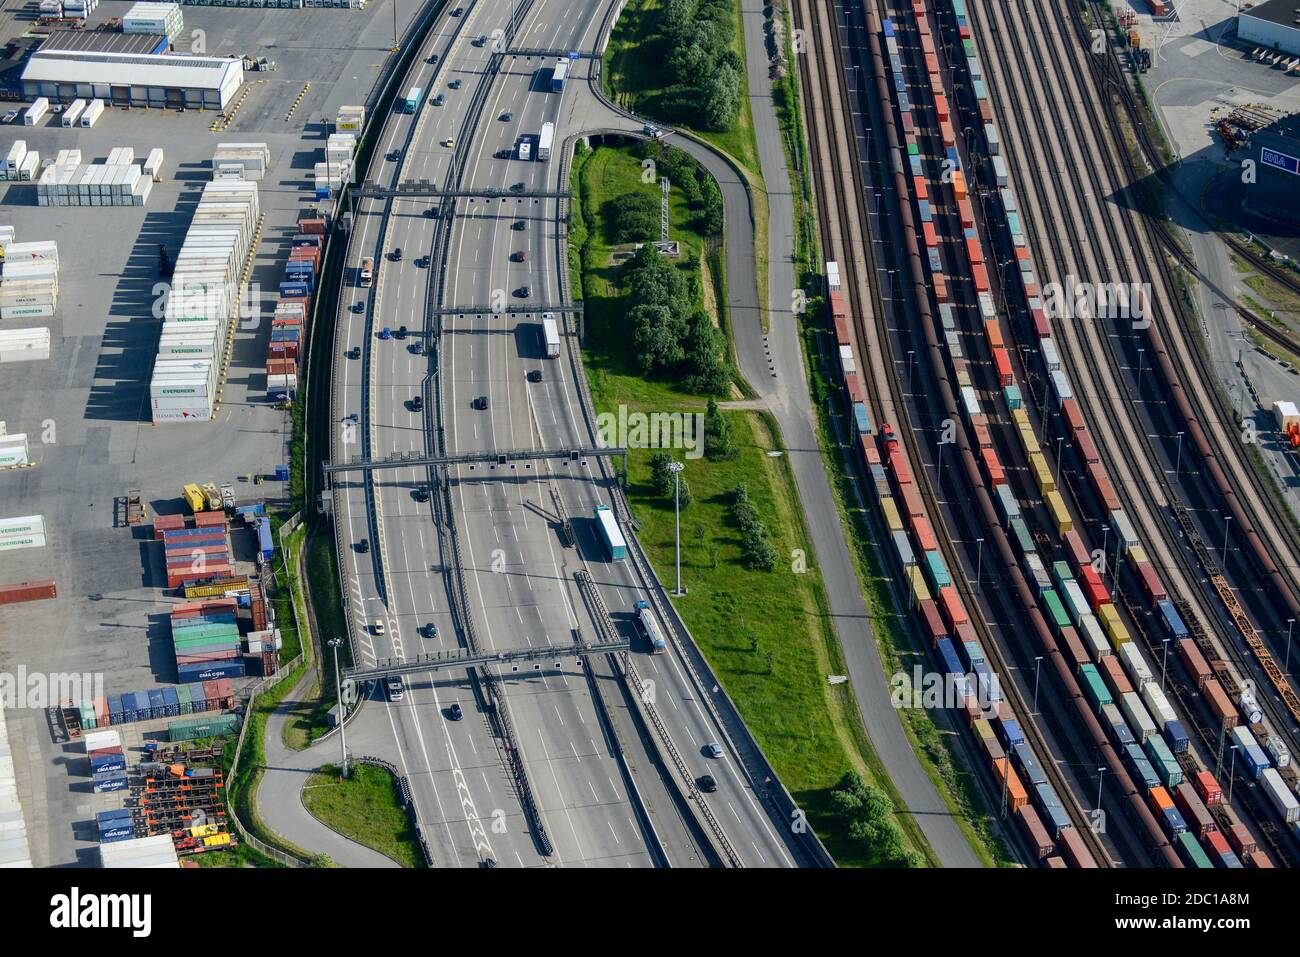 Germany, Hamburg, railway line for container transport from port and traffic on Autobahn / DEUTSCHLAND, Hamburg, Autobahn A7 und Bahnlinie Stock Photo